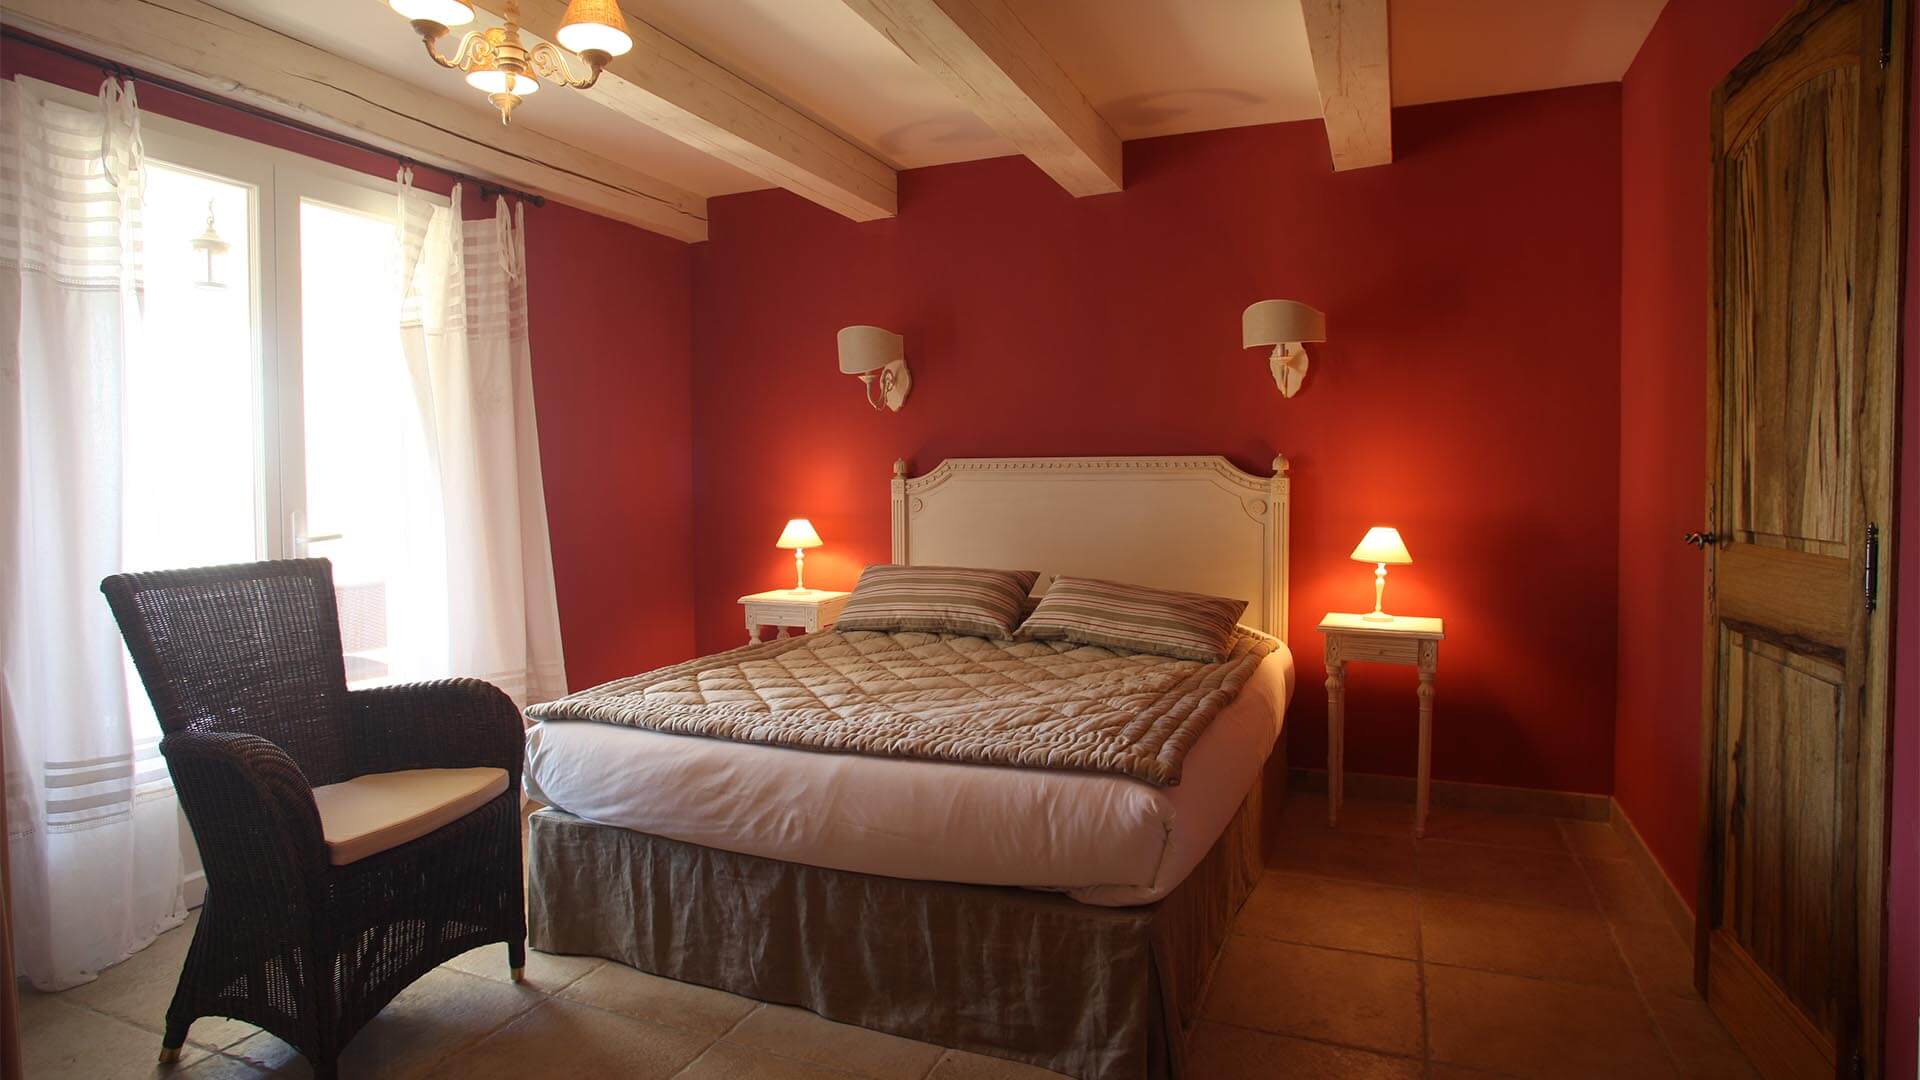 Location vacances Provence | Villa le mûrier blanc | Chambre lit double